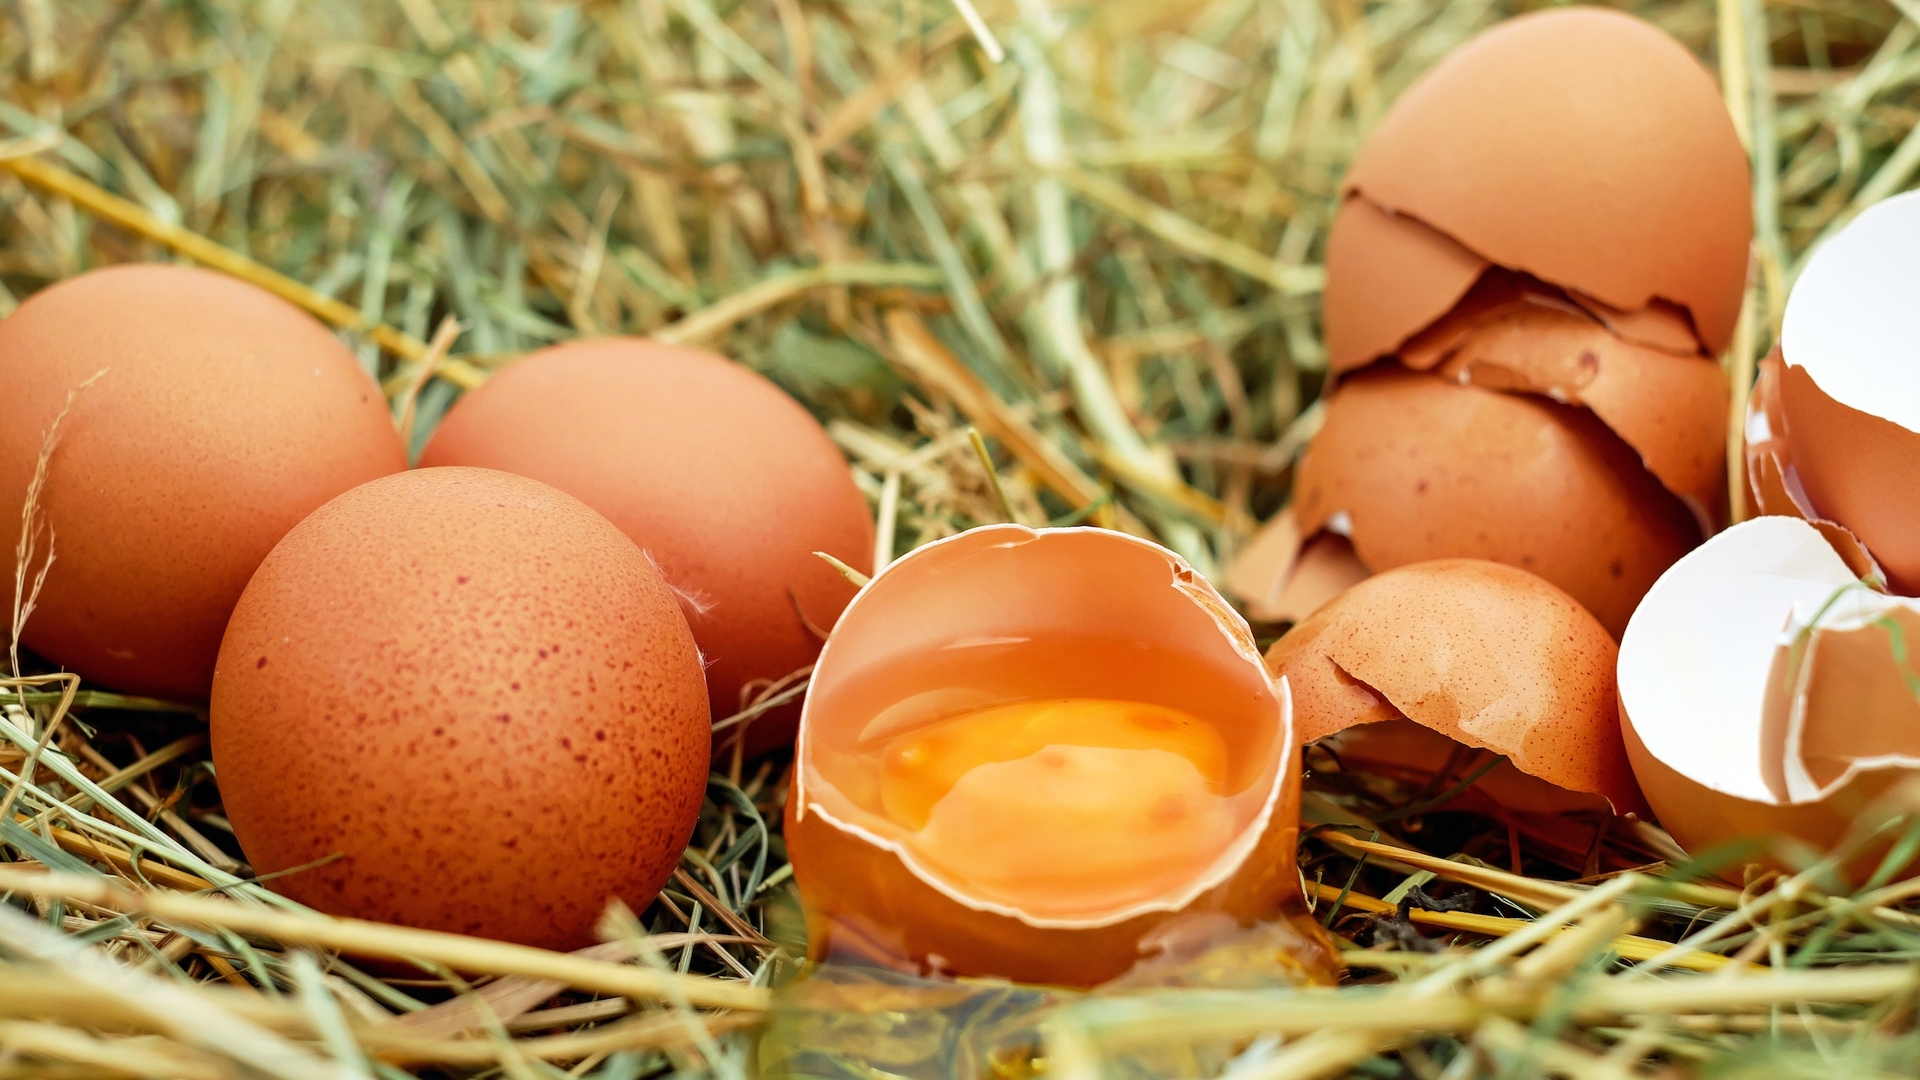 cracked-egg-yolk-eggs-128885